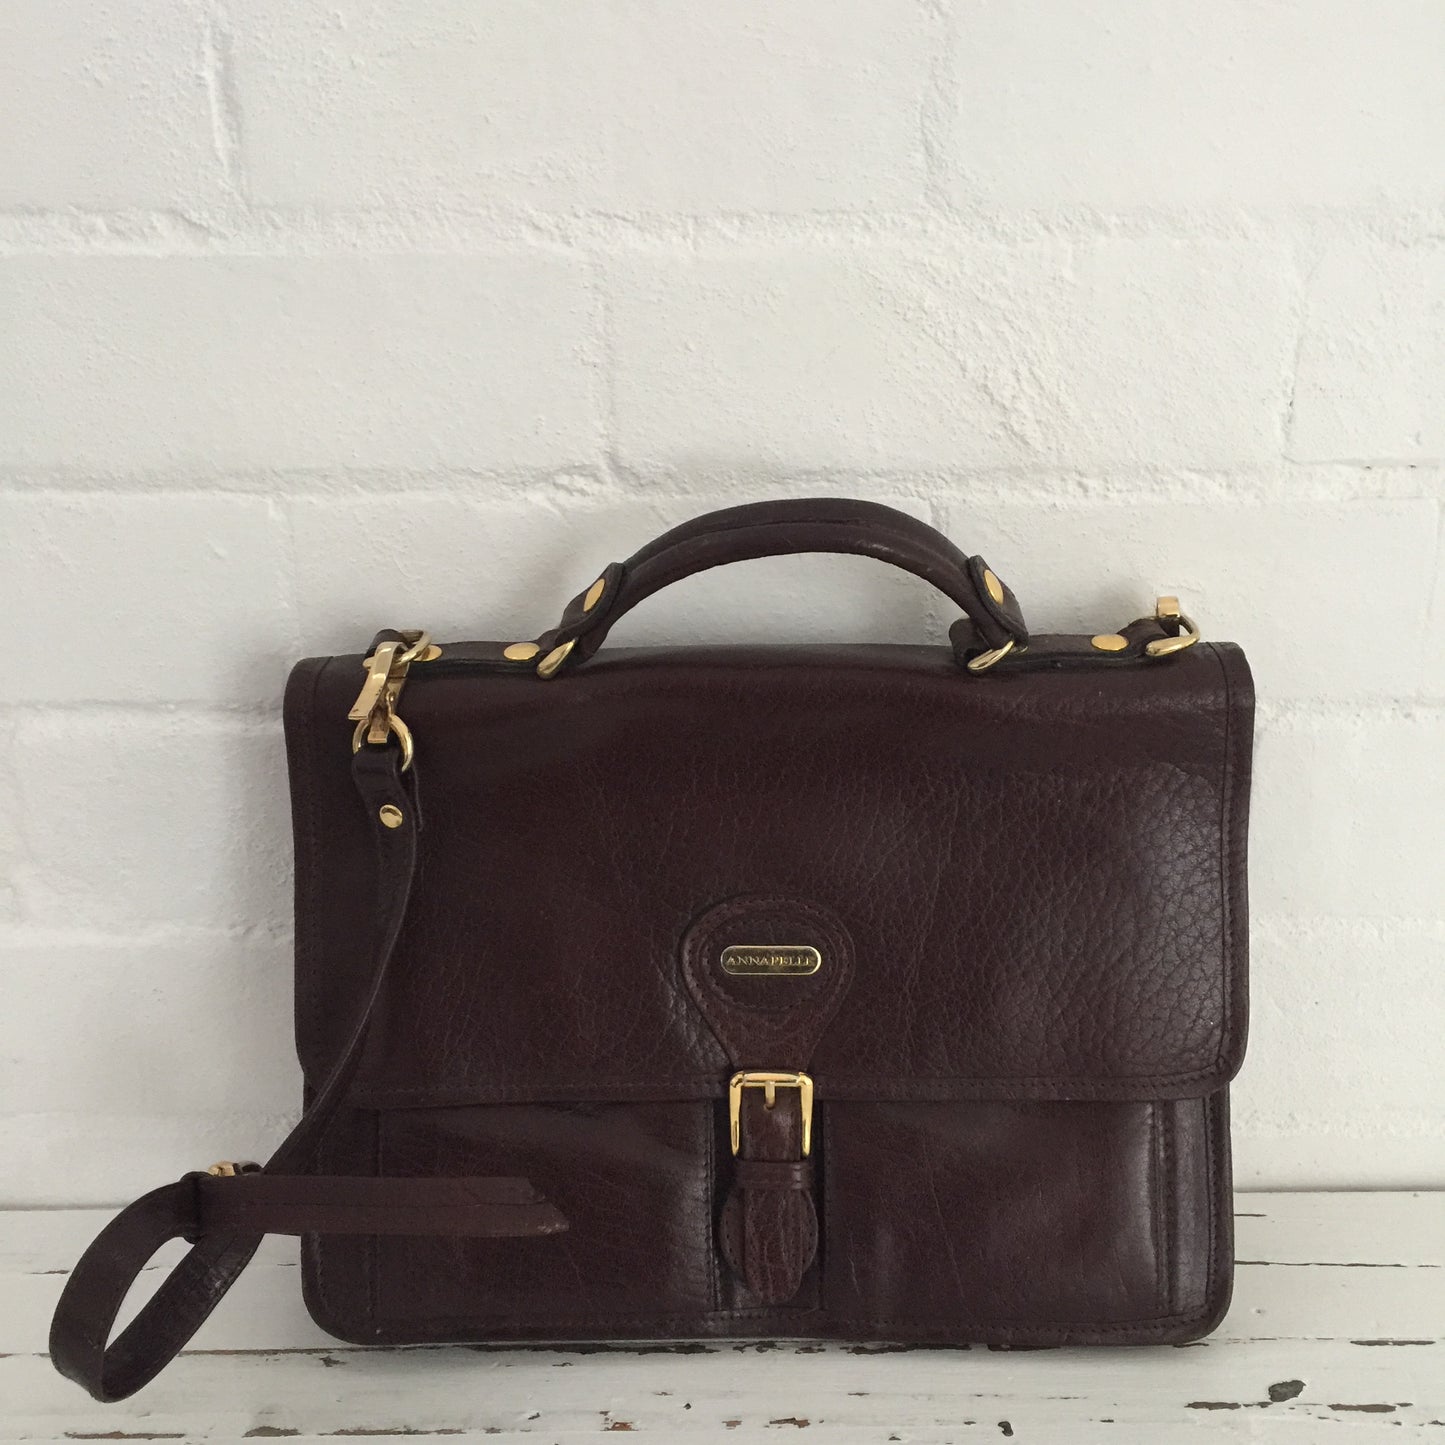 Annapelle Satchel Vintage GENUINE LEATHER Handbag UNI SCHOOL